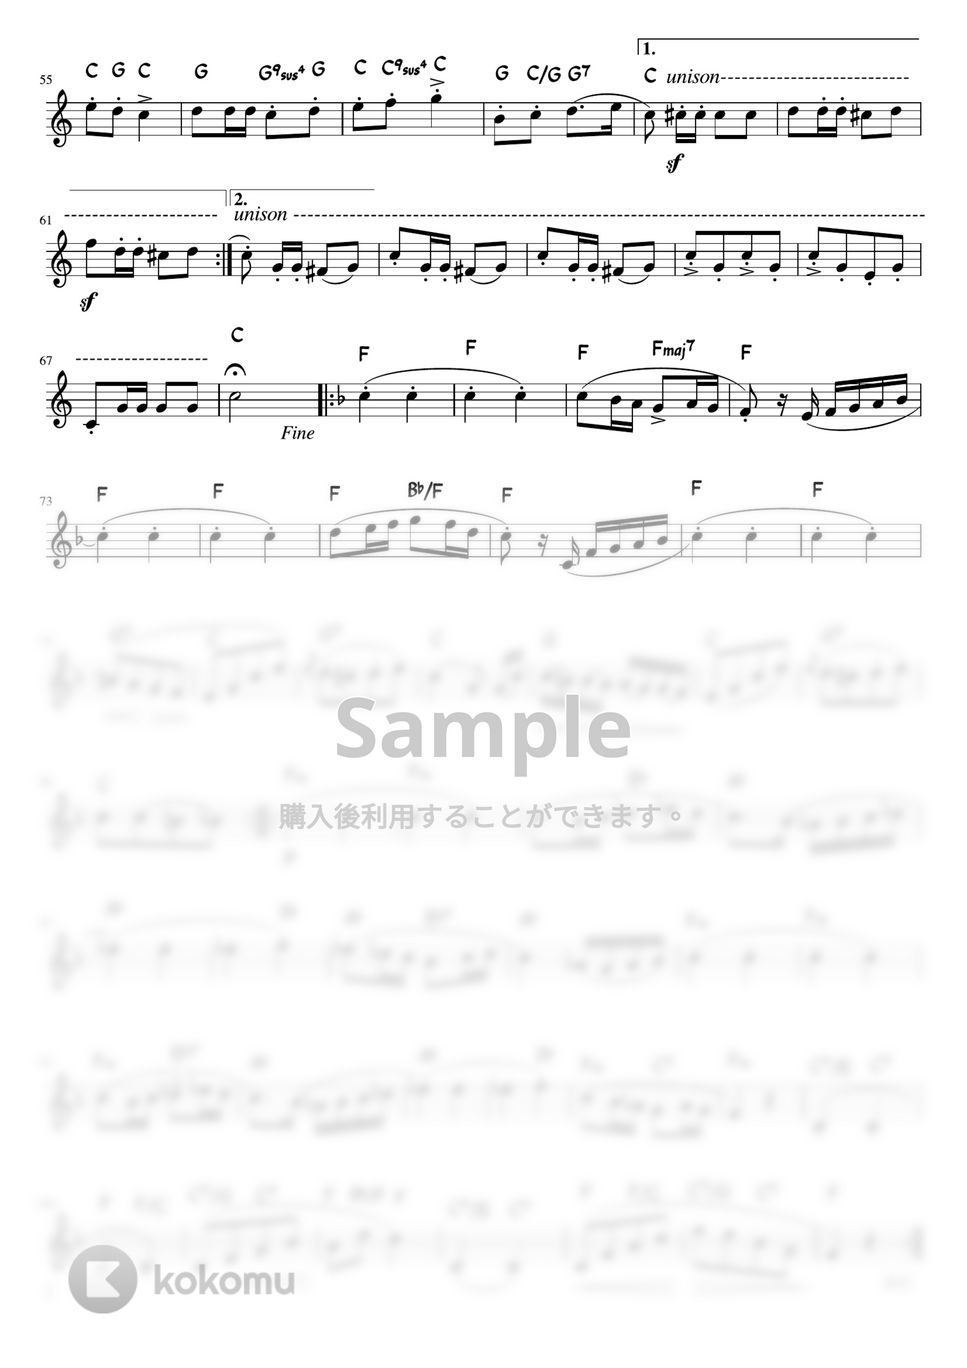 シューベルト - 軍隊行進曲 (C・メロディーコード) by pfkaori